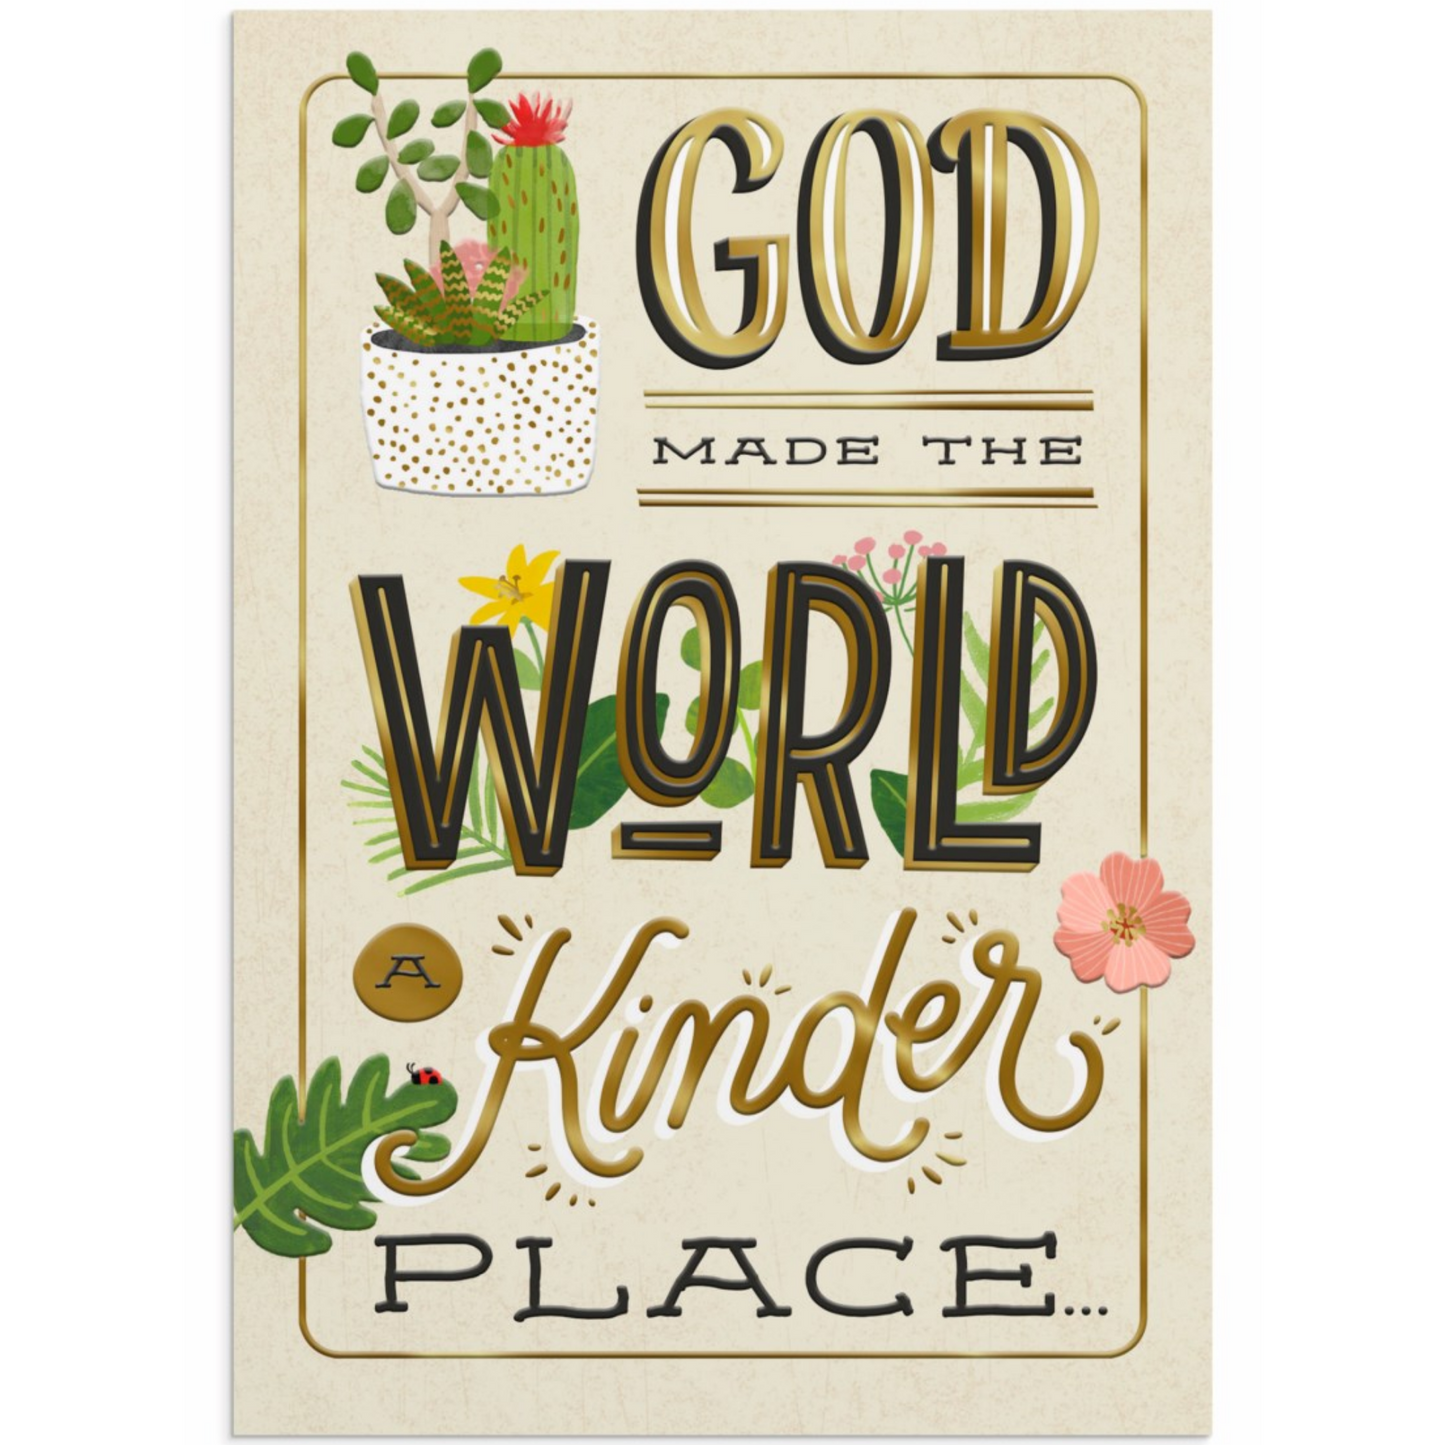 Appreciation - God Made the World Kinder (#J8227)